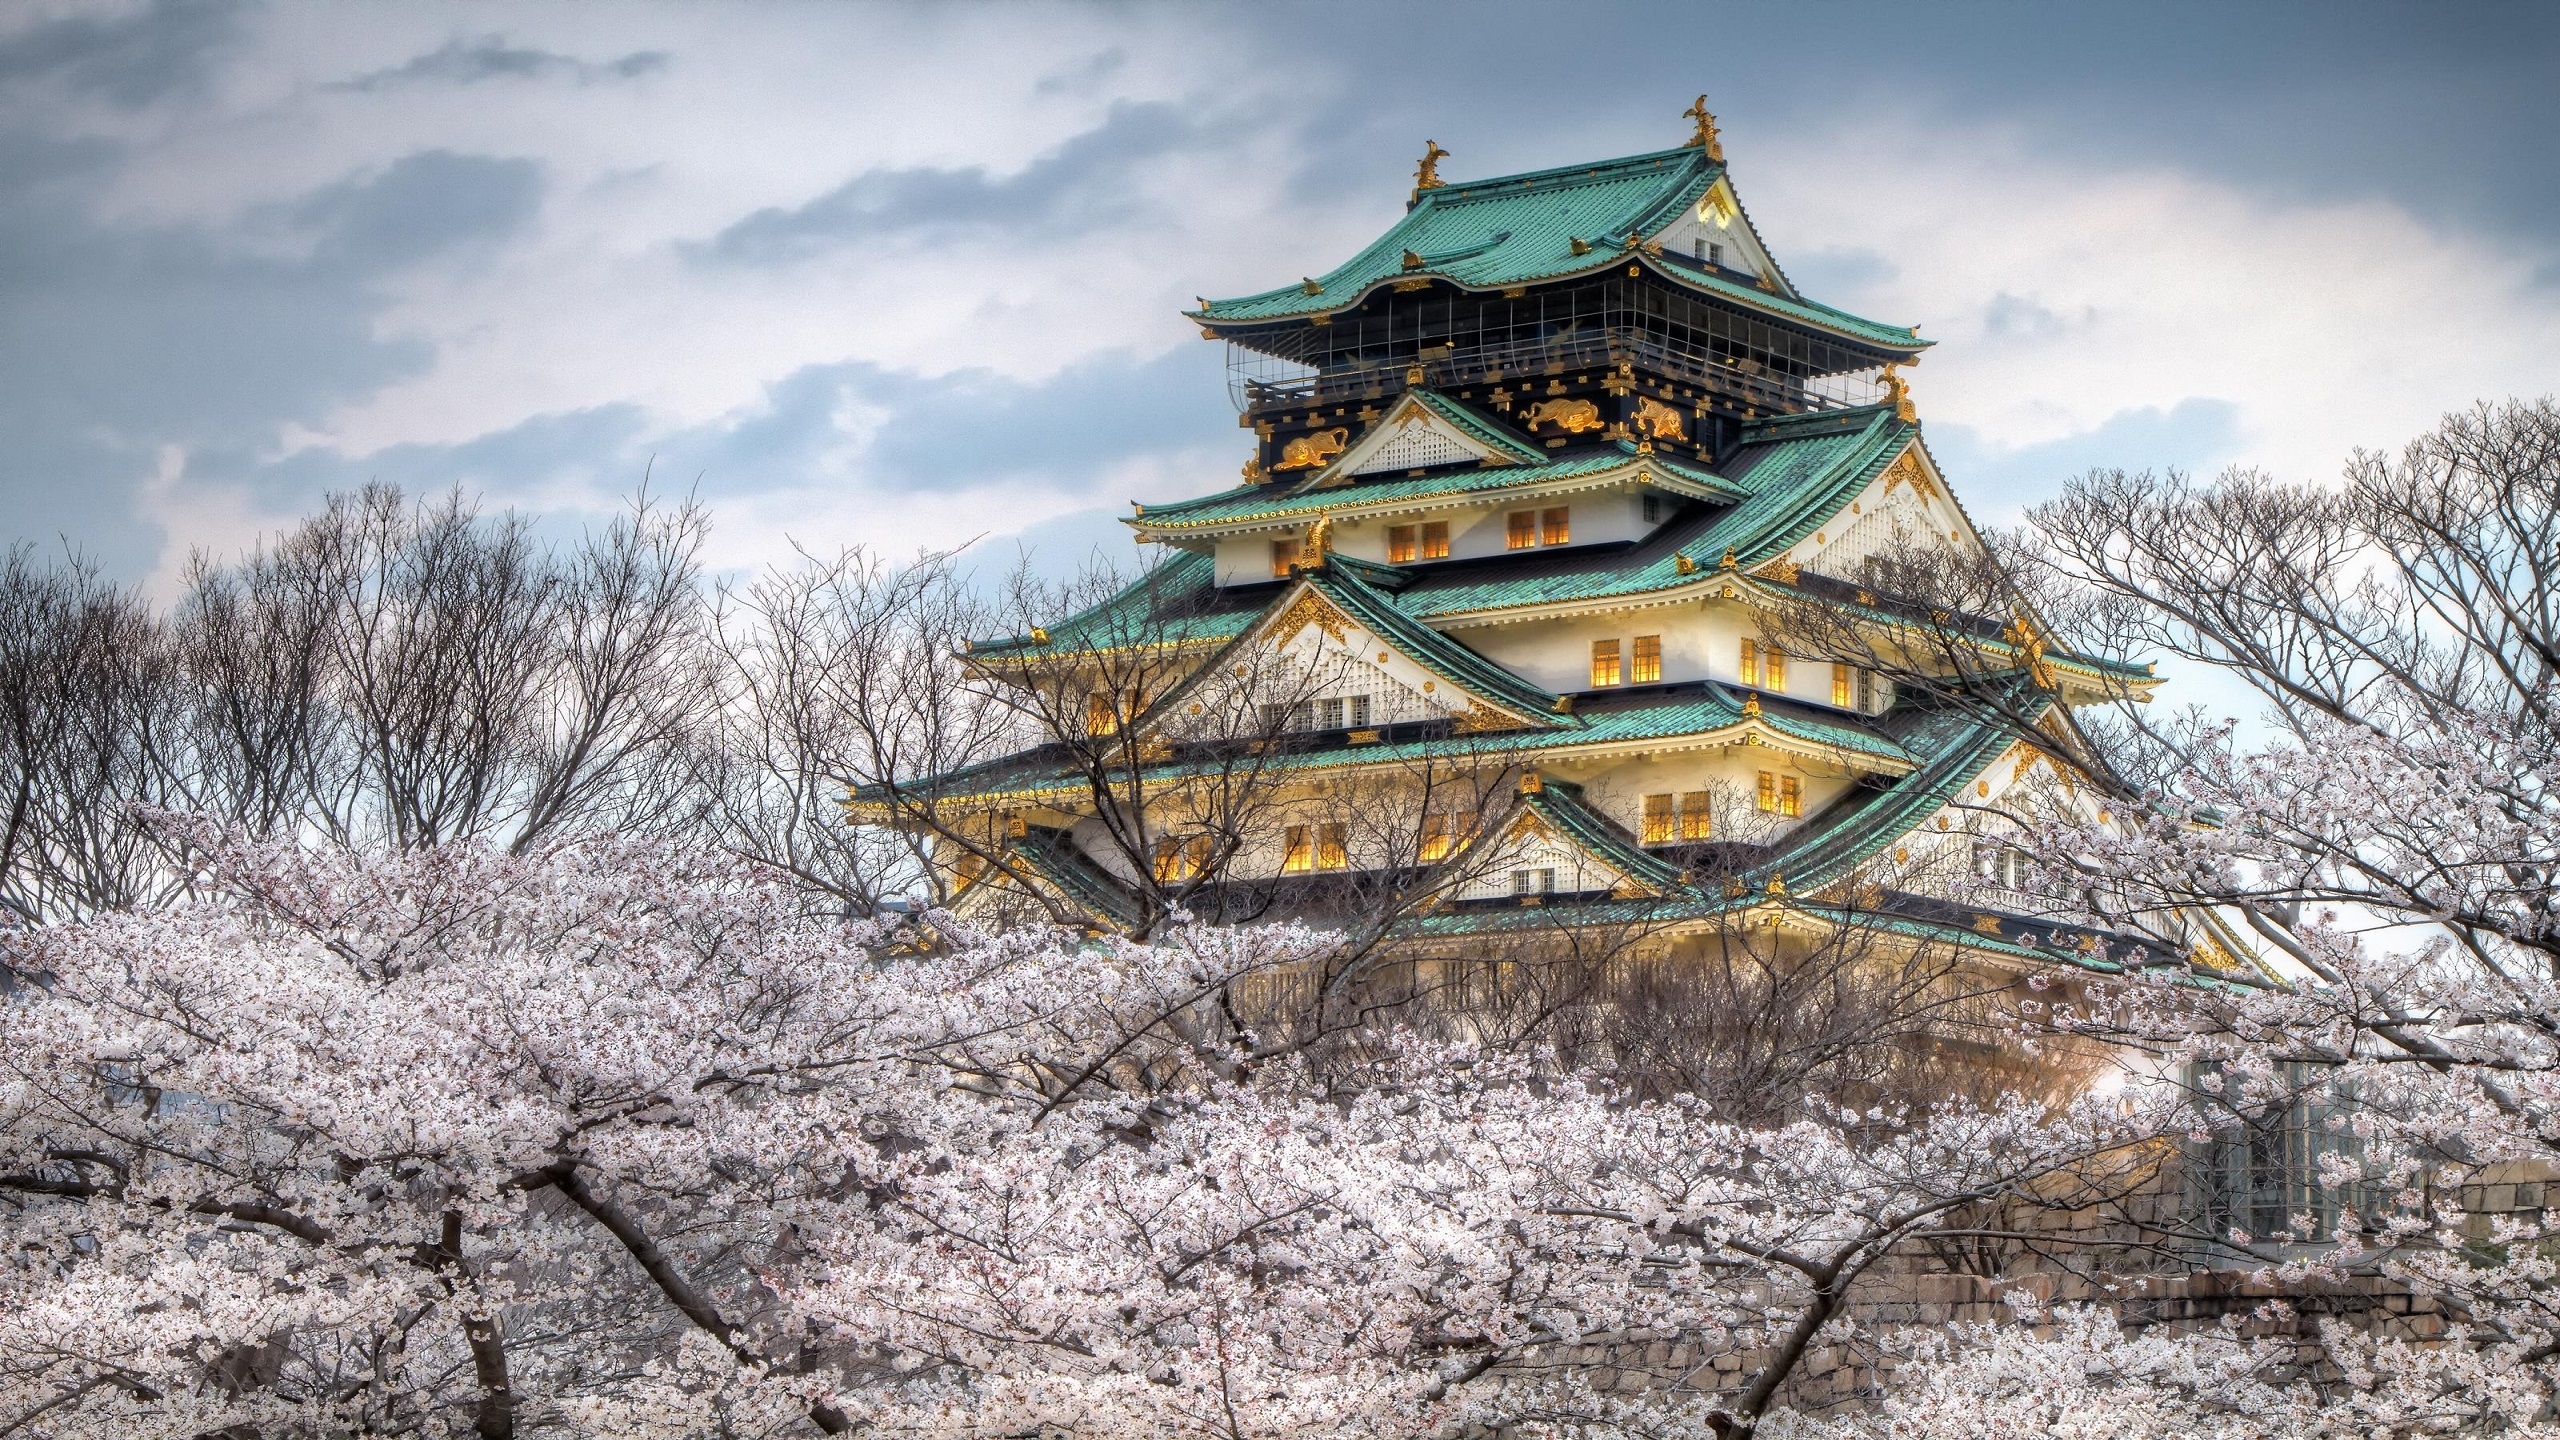 Osaka Castle Japan for 2560 x 1440 HDTV resolution